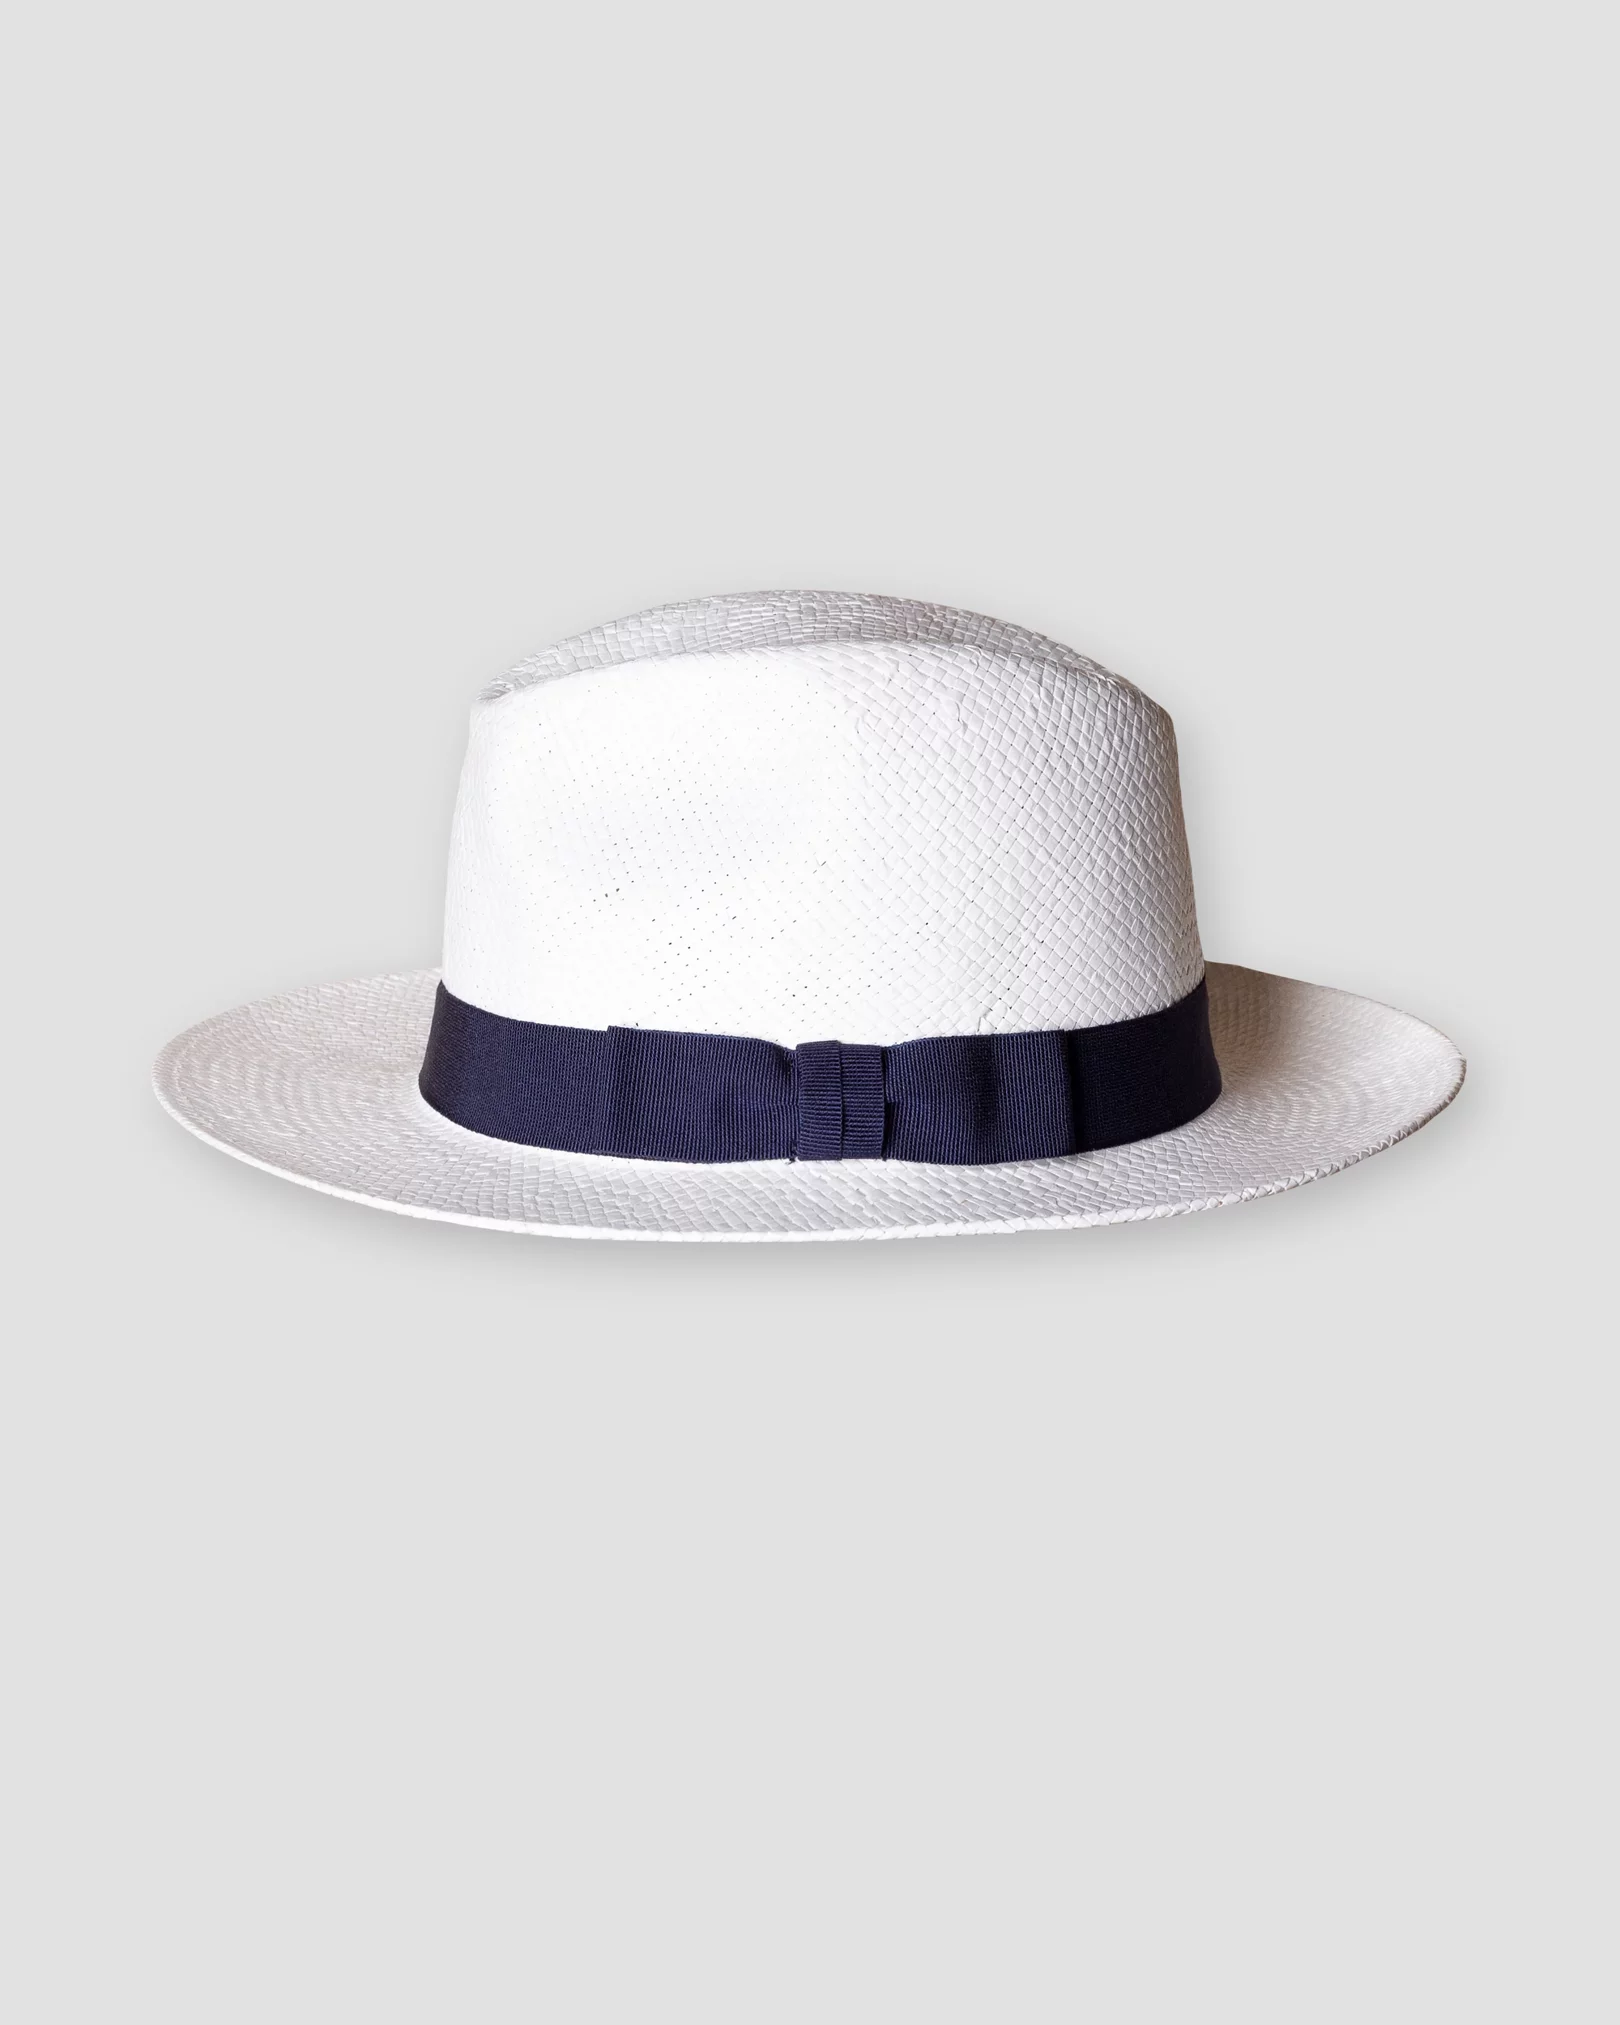 Eton - Chapeau blanc en paille et papier – Bande gros-grain bleu marine